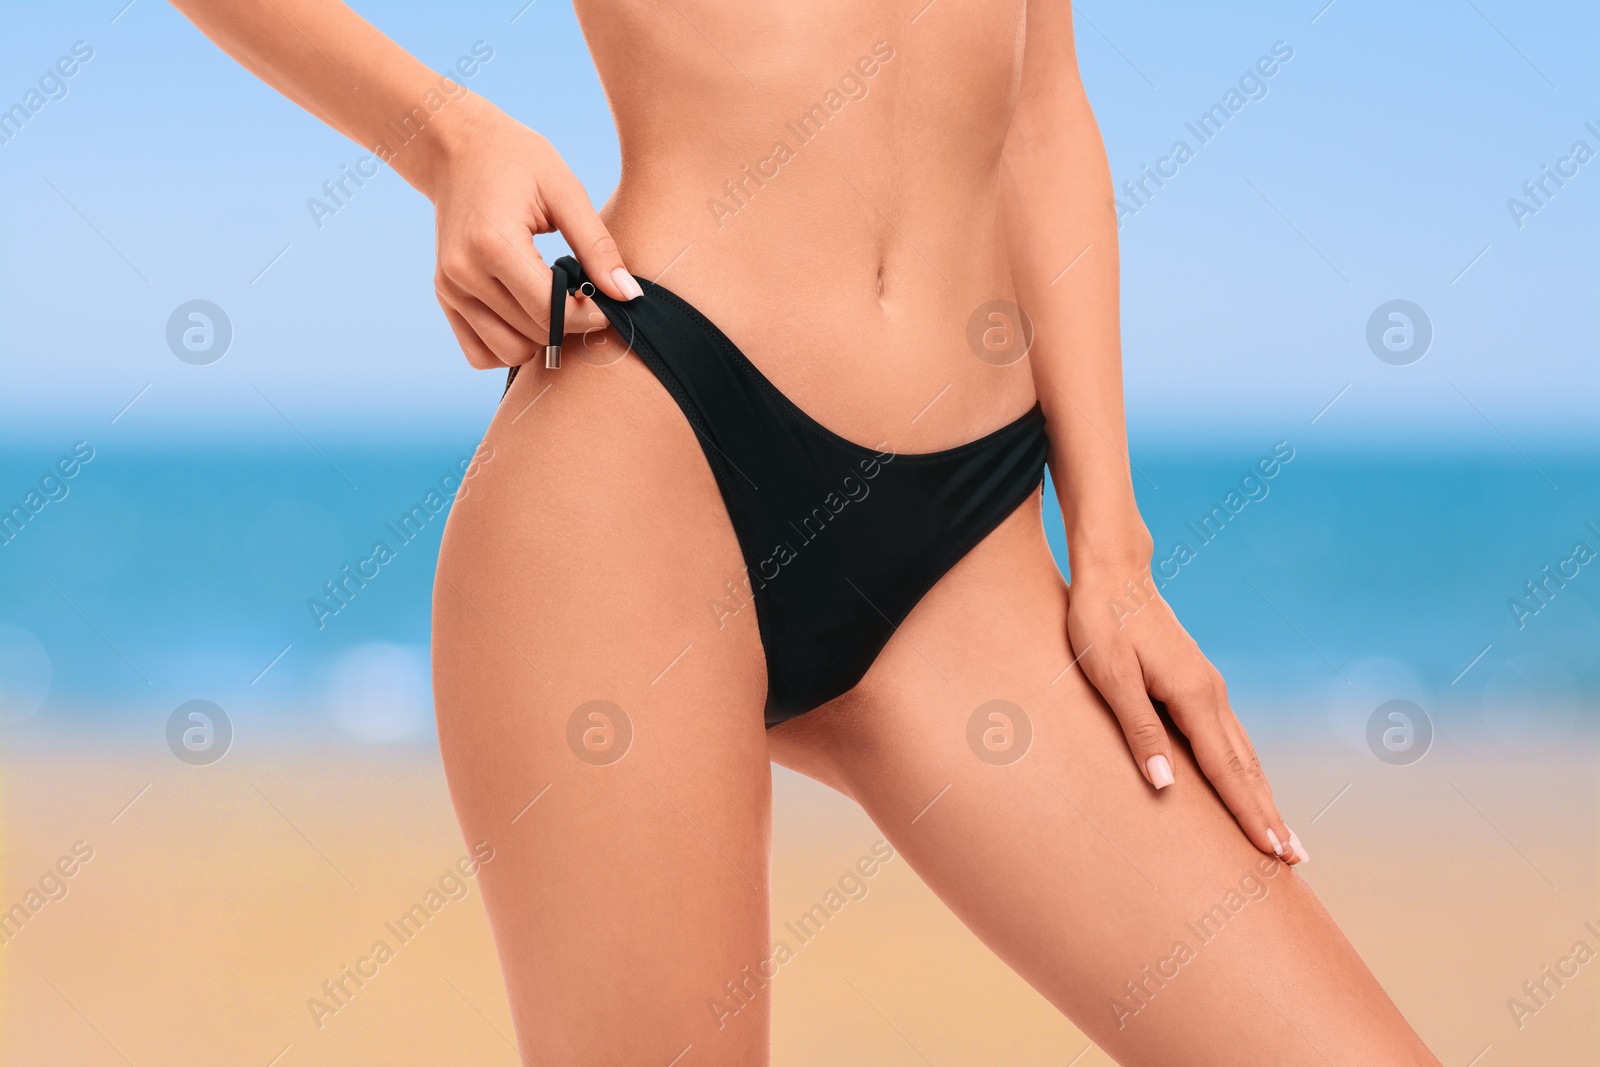 Image of Woman in stylish black bikini on sandy beach near sea, closeup